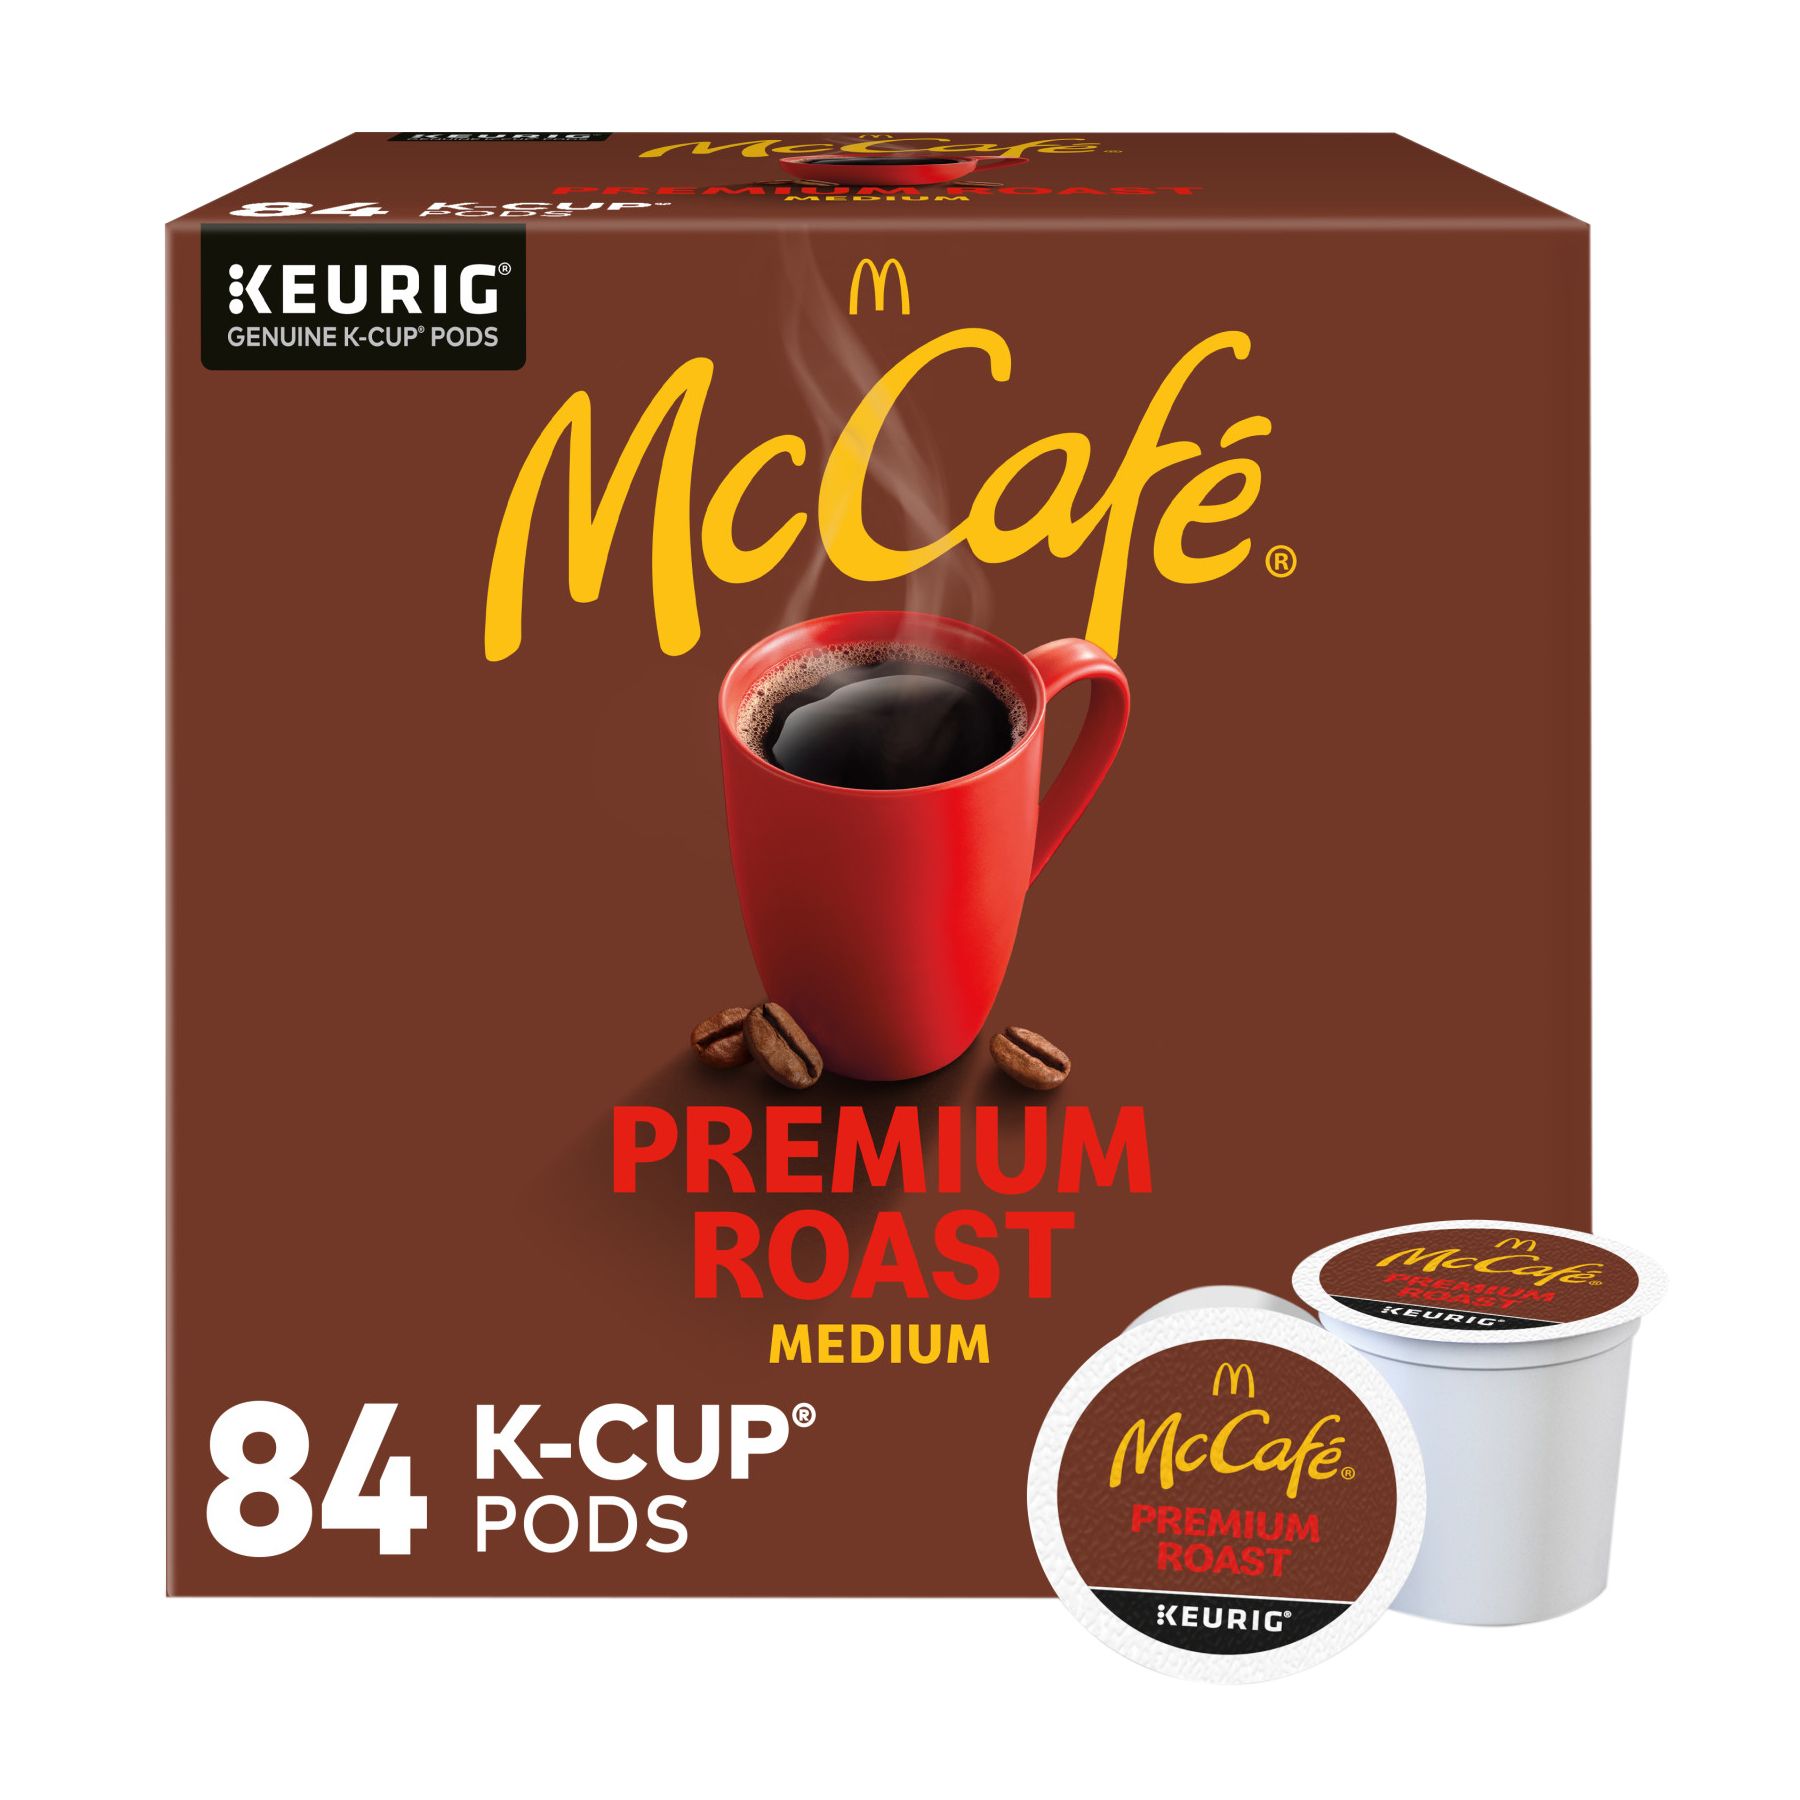 McCafe Premium Roast Coffee K-Cup Packs, 84 ct.